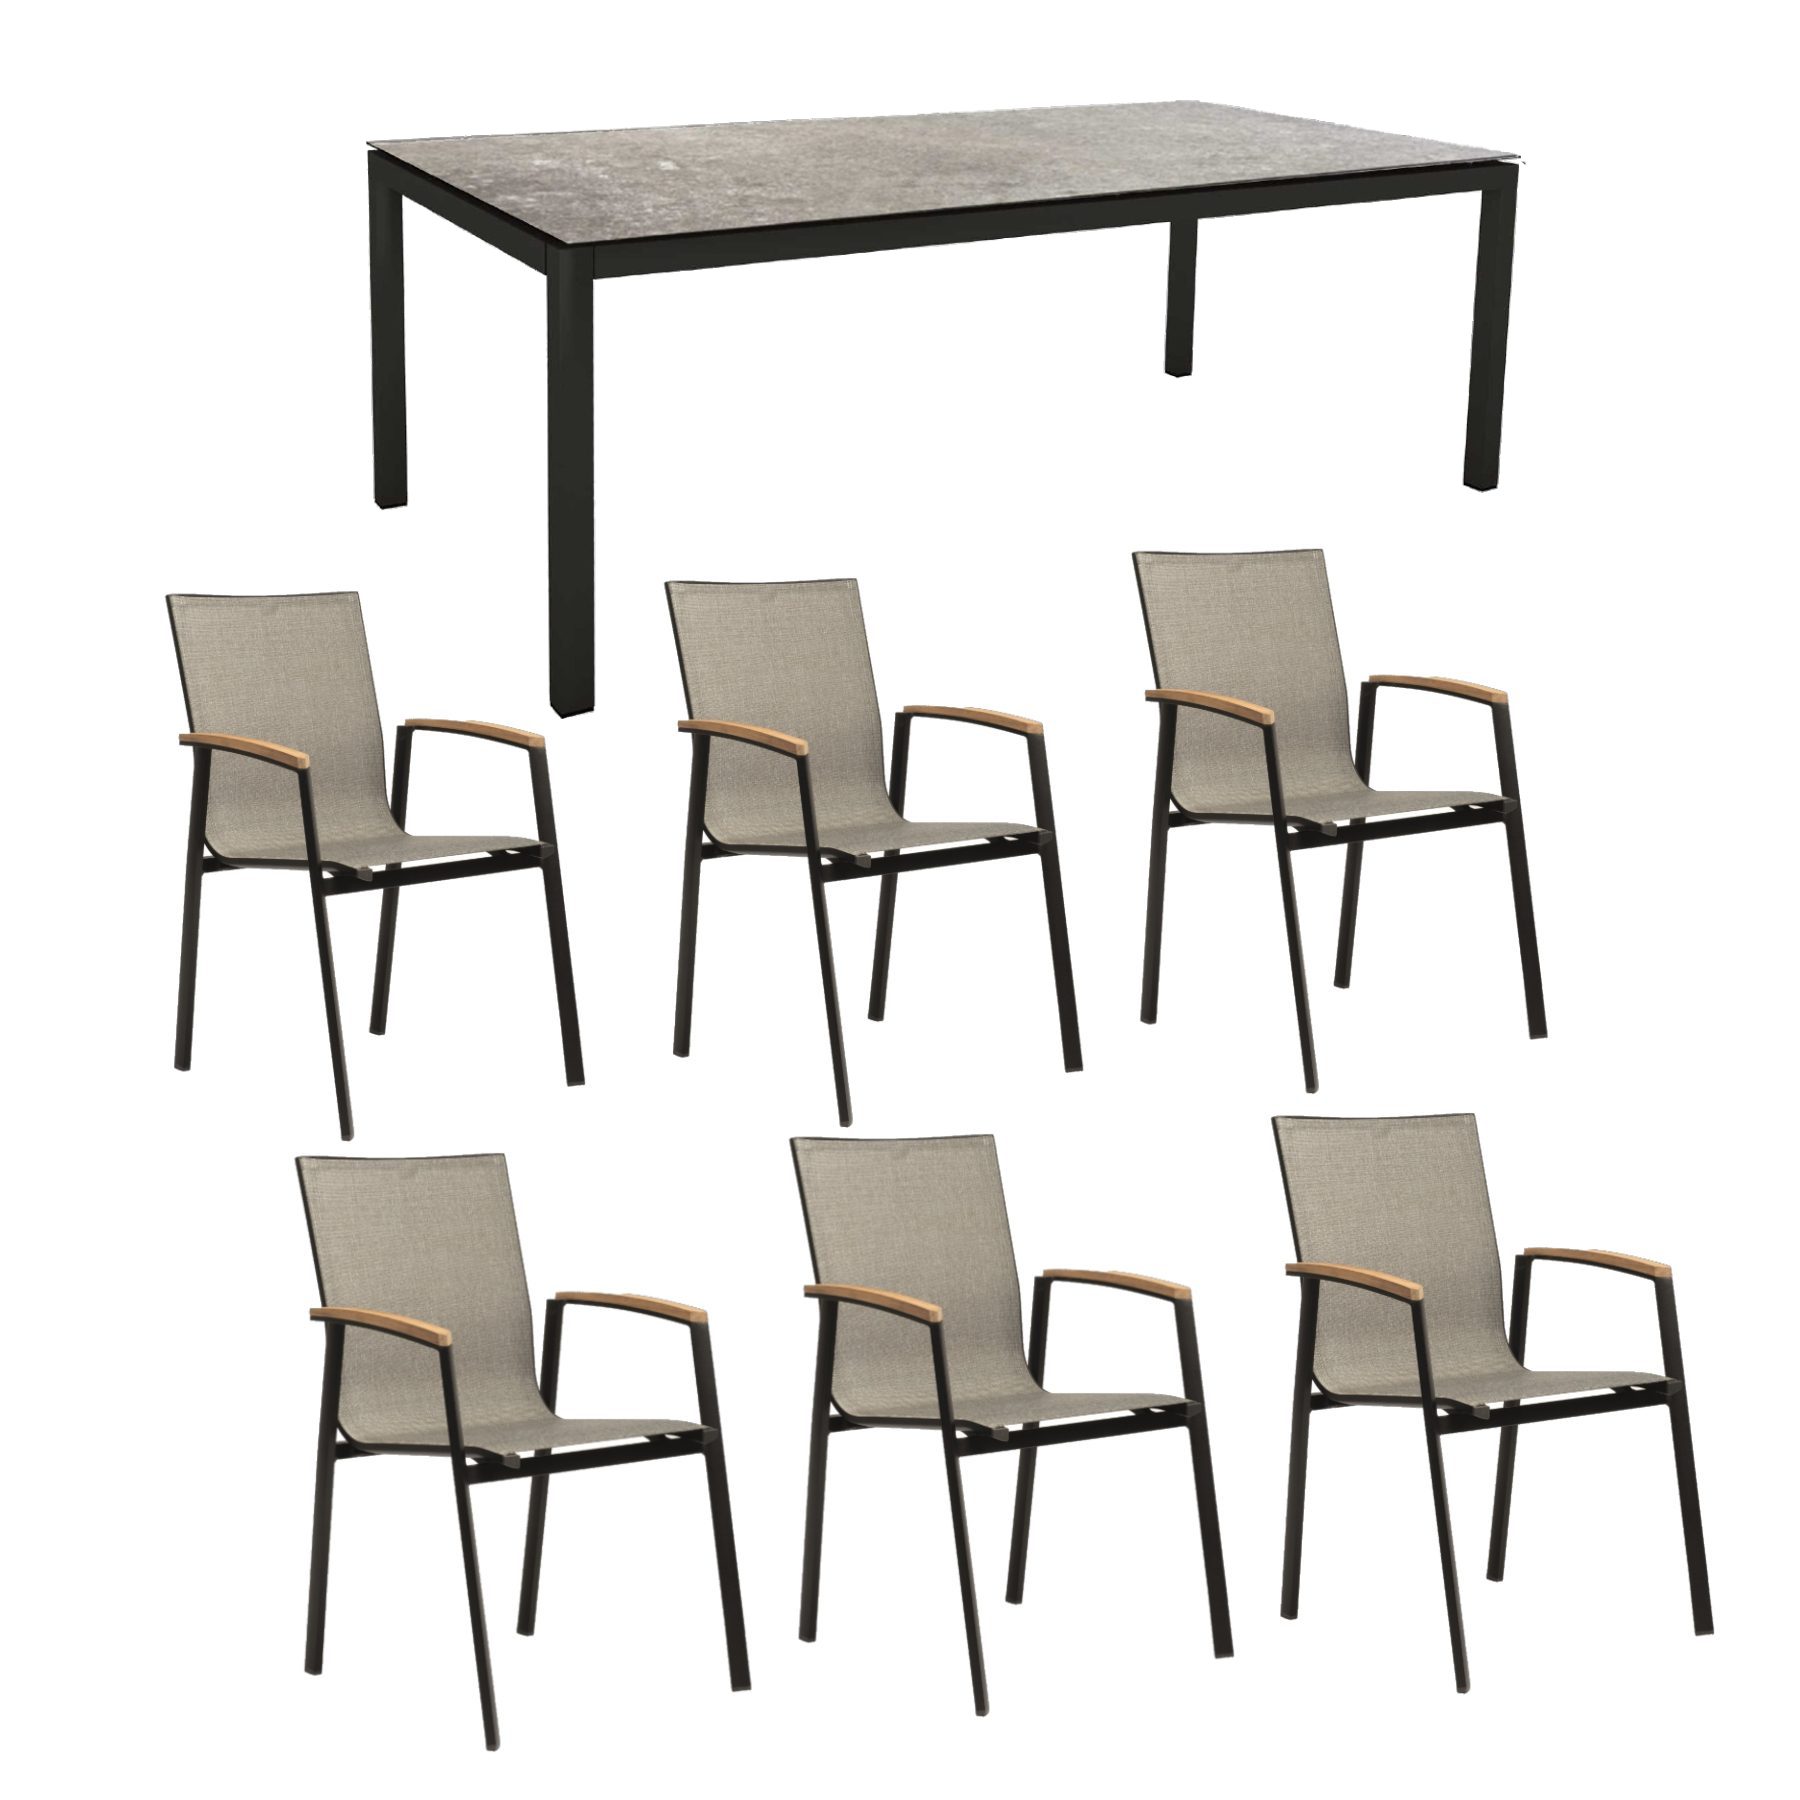 Stern Gartenmöbel-Set mit Stuhl "New Top“ und Gartentisch Aluminium/HPL, Gestelle Aluminium schwarz matt, Sitz Textil Leinen grau, Tischplatte HPL Vintage Stone